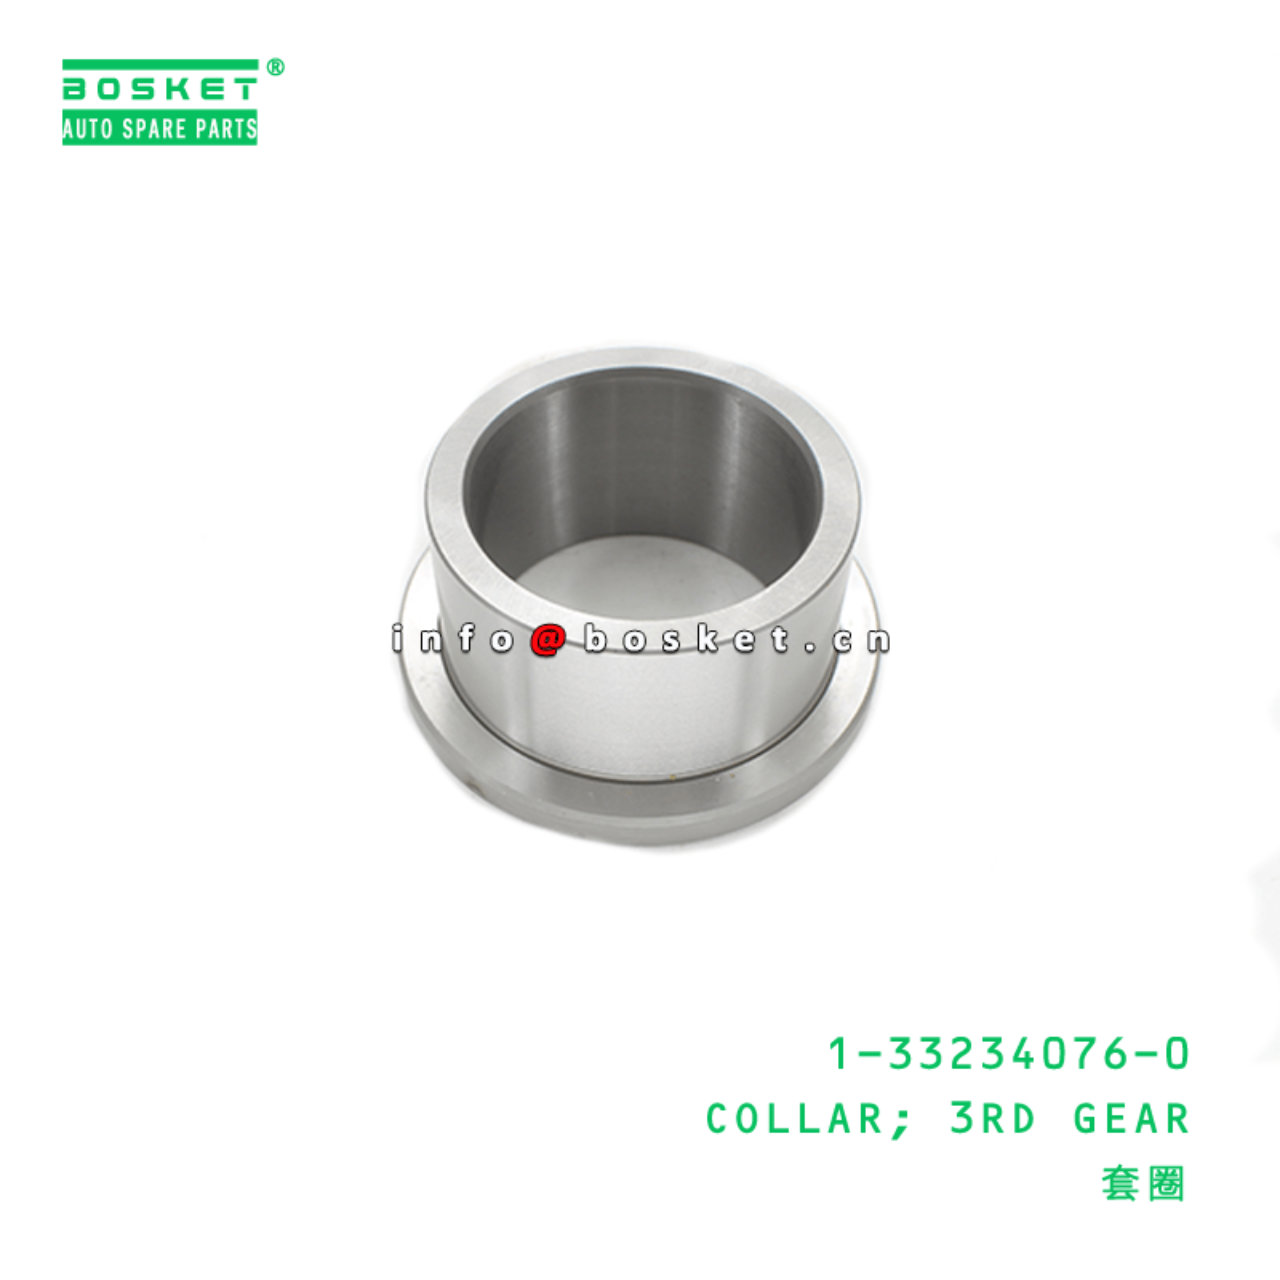 1-33234076-0 Third Gear Collar Suitable for ISUZU FRR FSR 1332340760